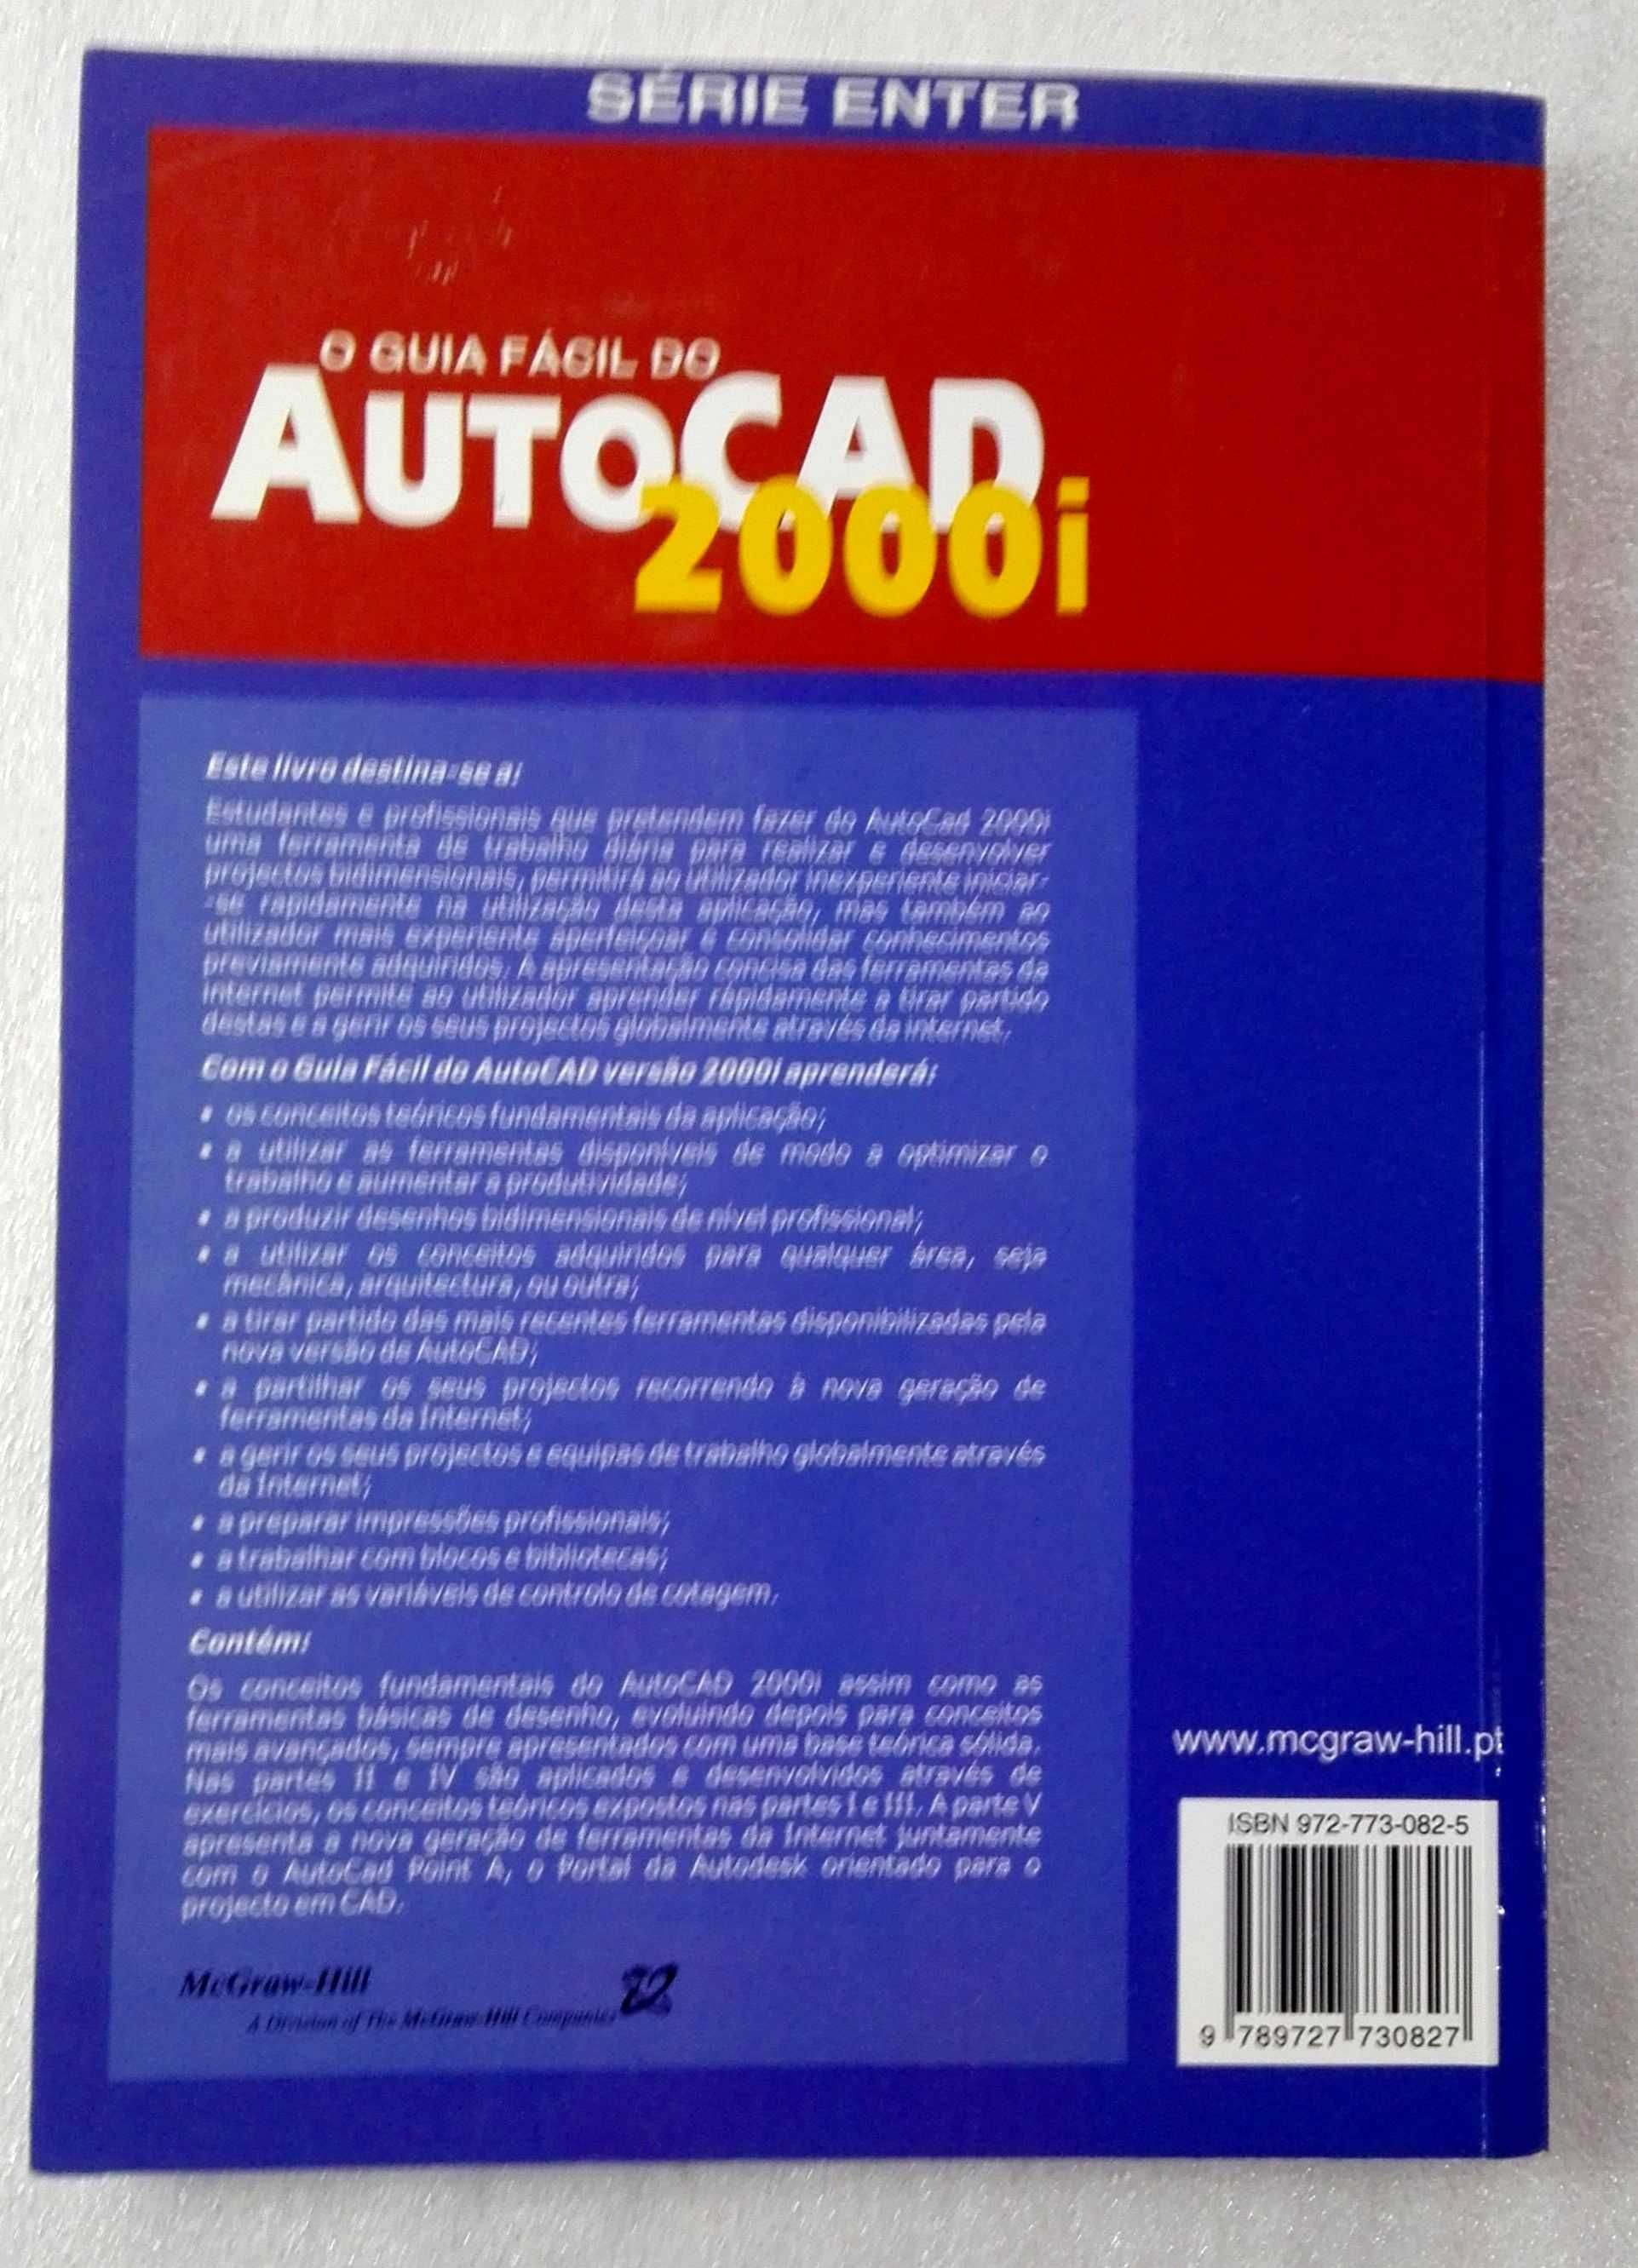 Livro O Guia Fácil do Autocad 2000i – Série Enter